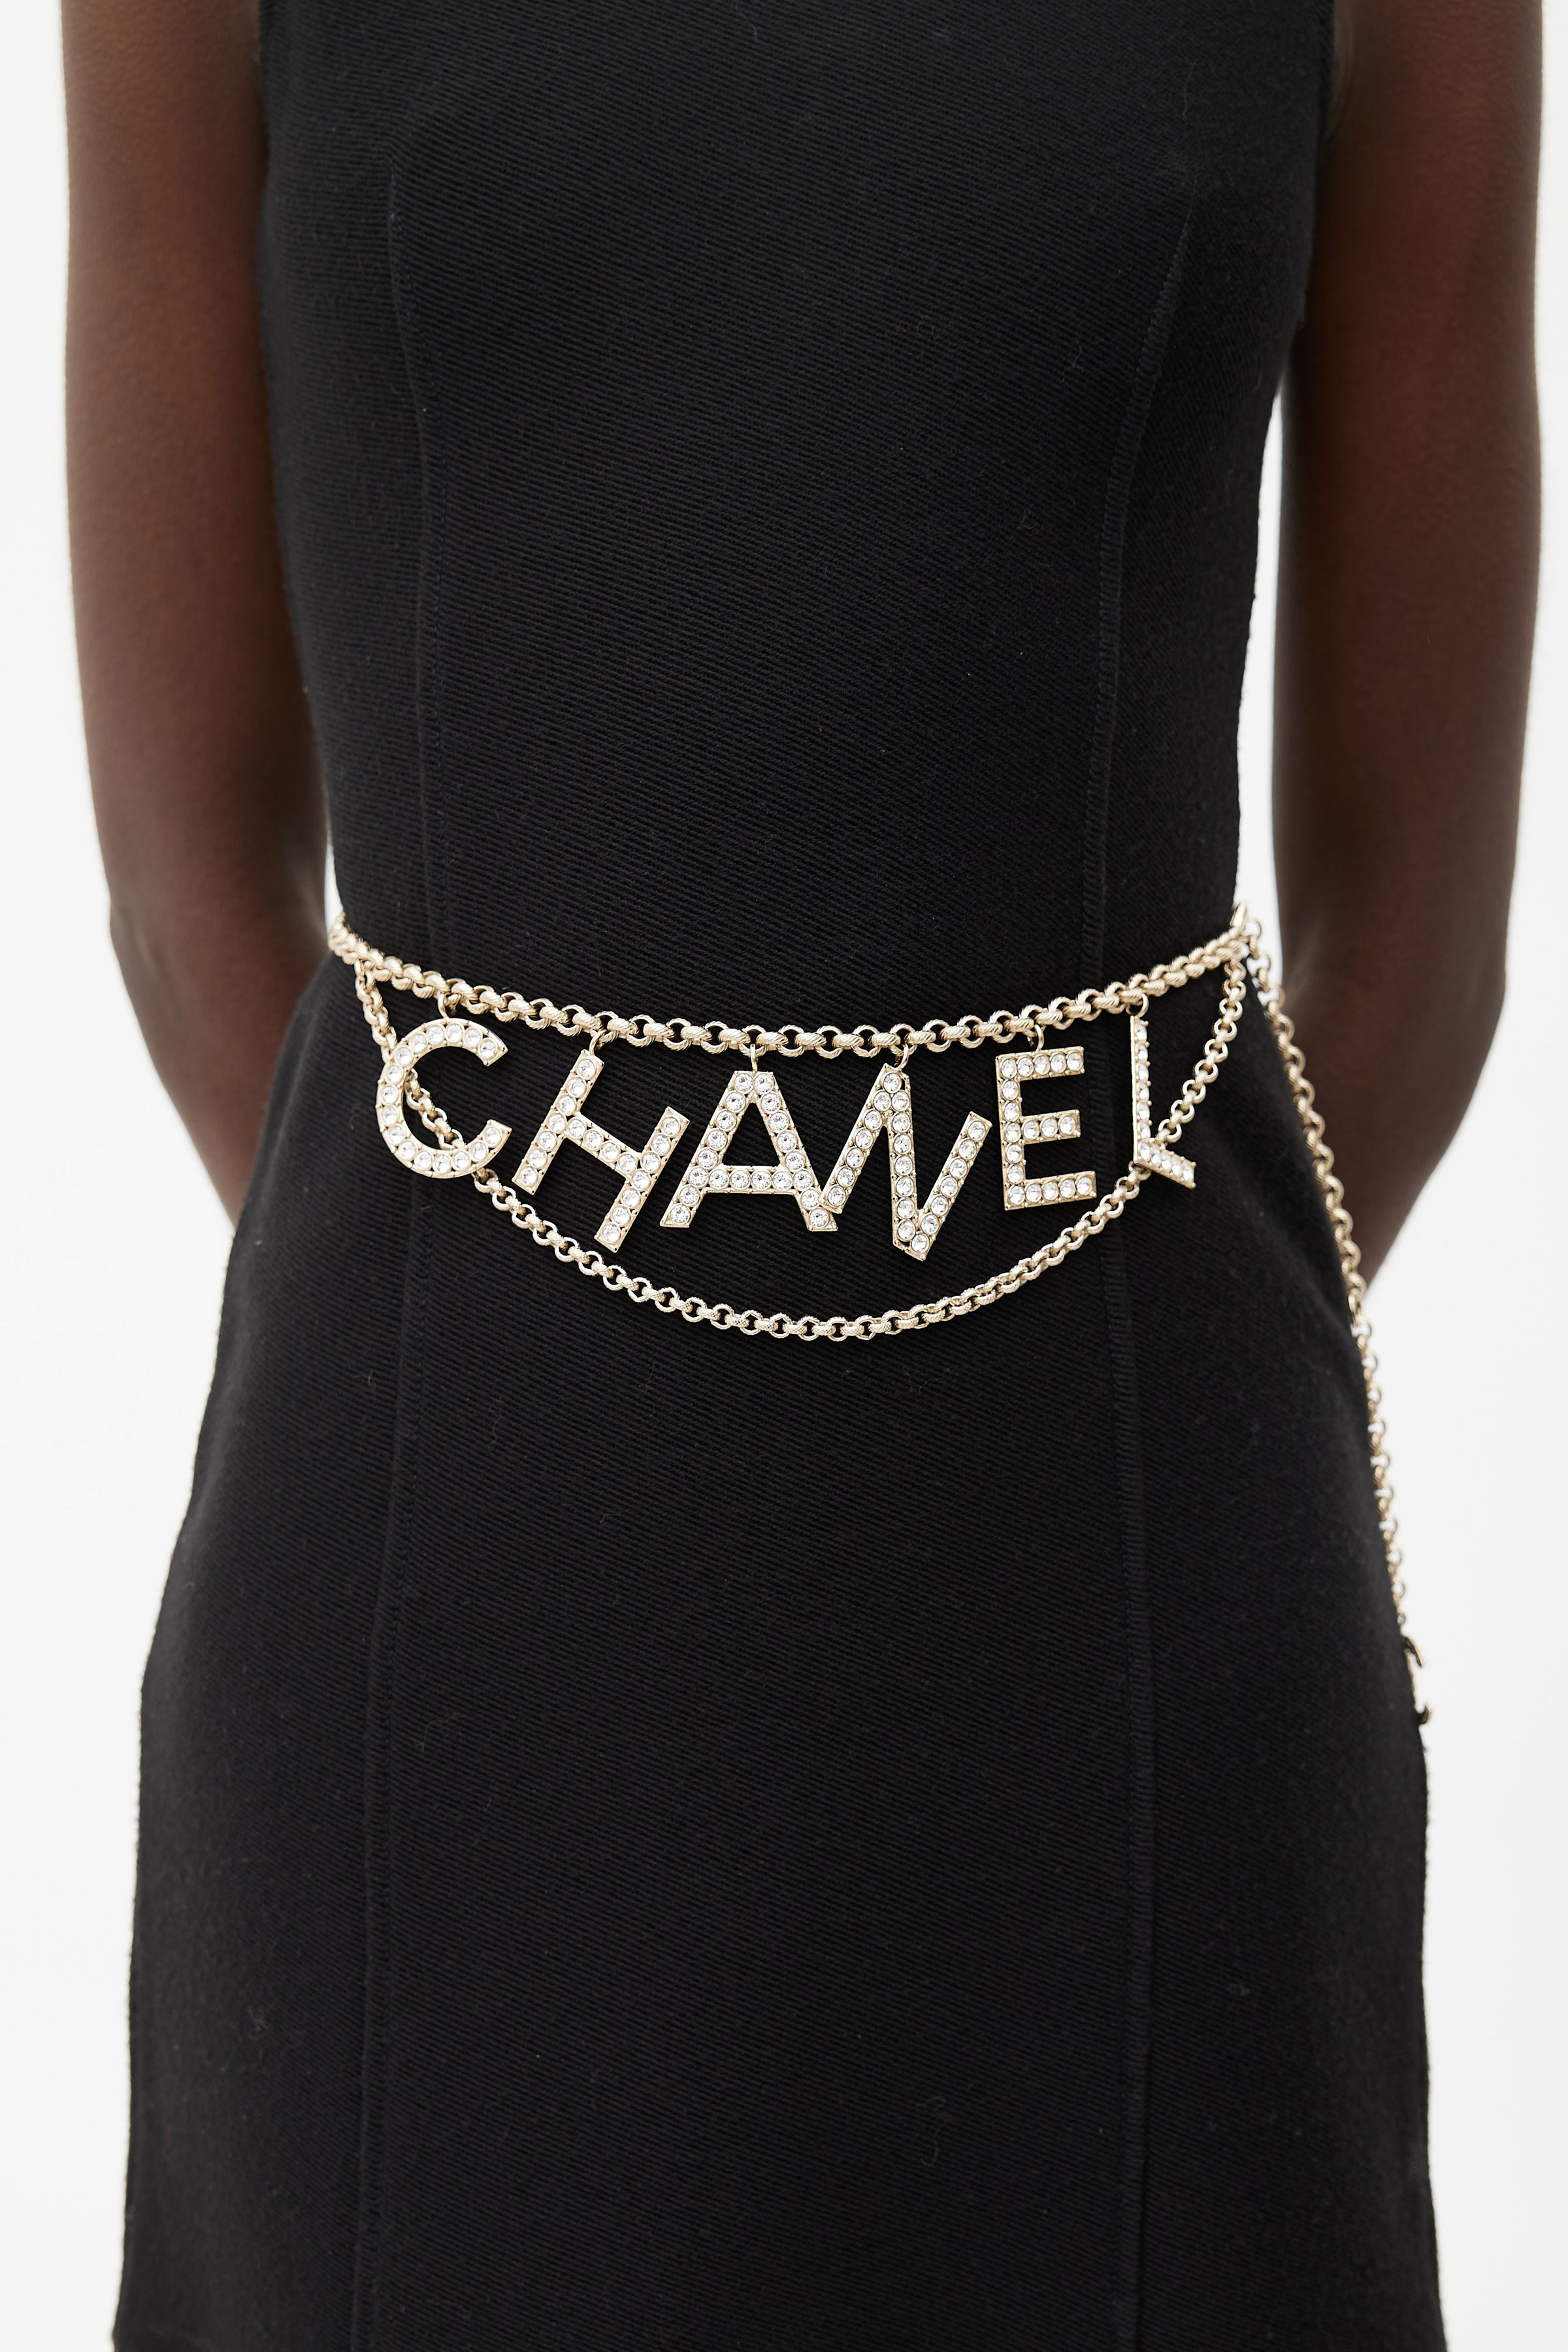 chanel chain belt women